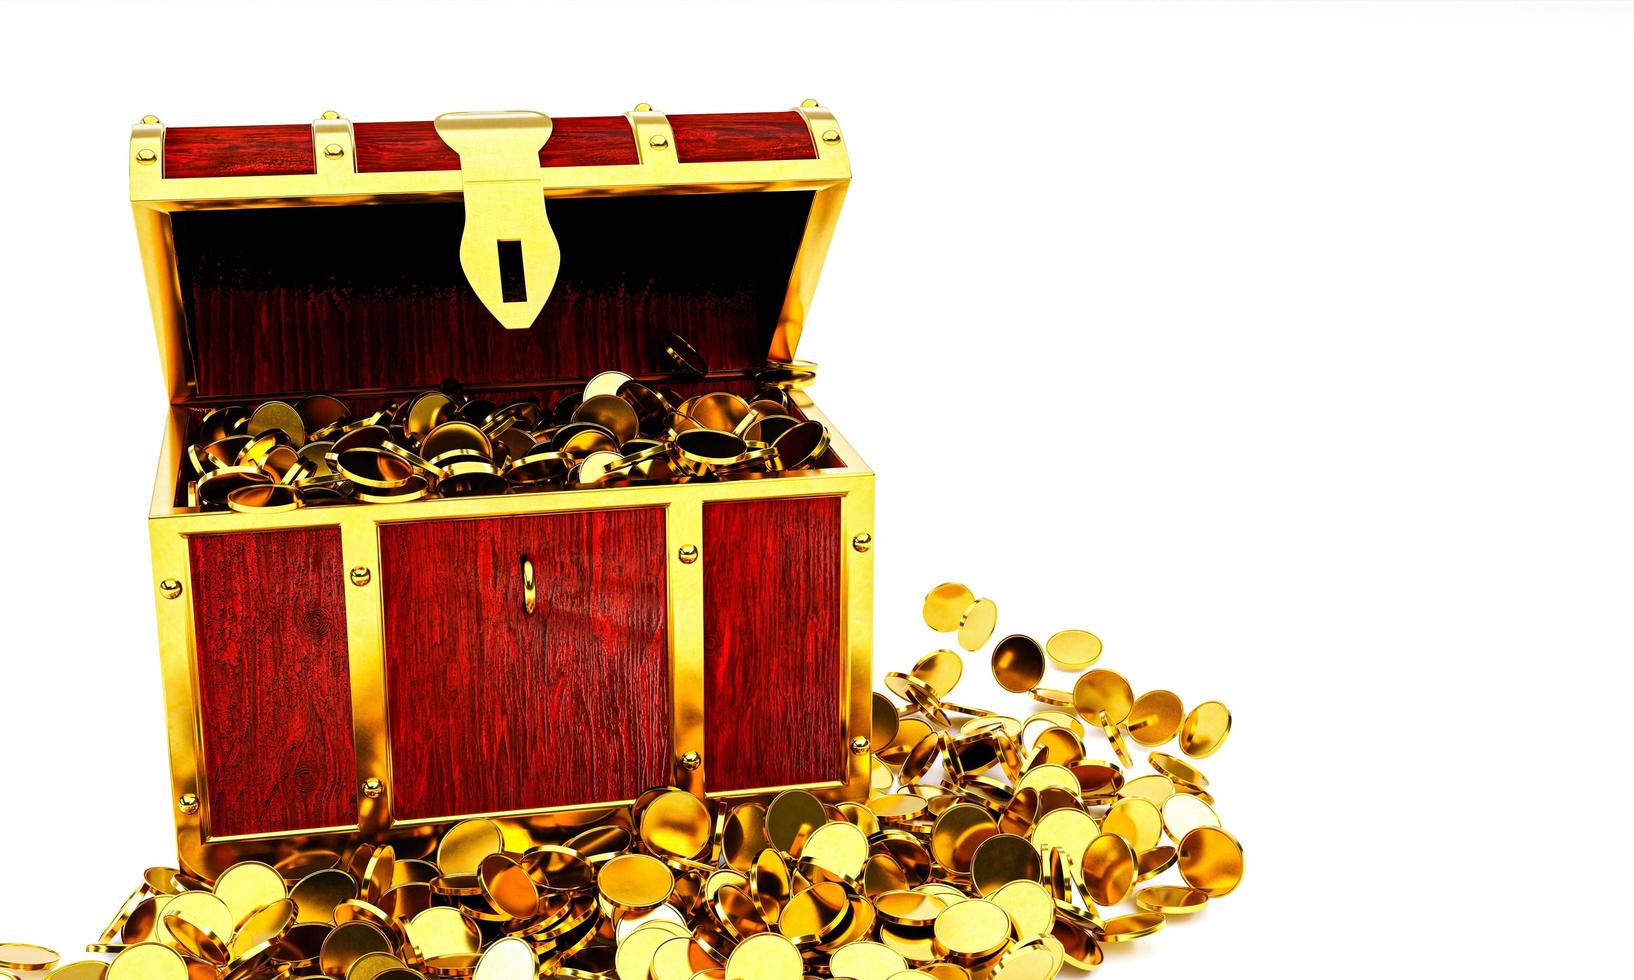 Numerosas monedas de oro se derramaron del cofre del tesoro. cofre del tesoro de madera de estilo antiguo bien ensamblado con tiras de metal oxidado. representación 3d foto